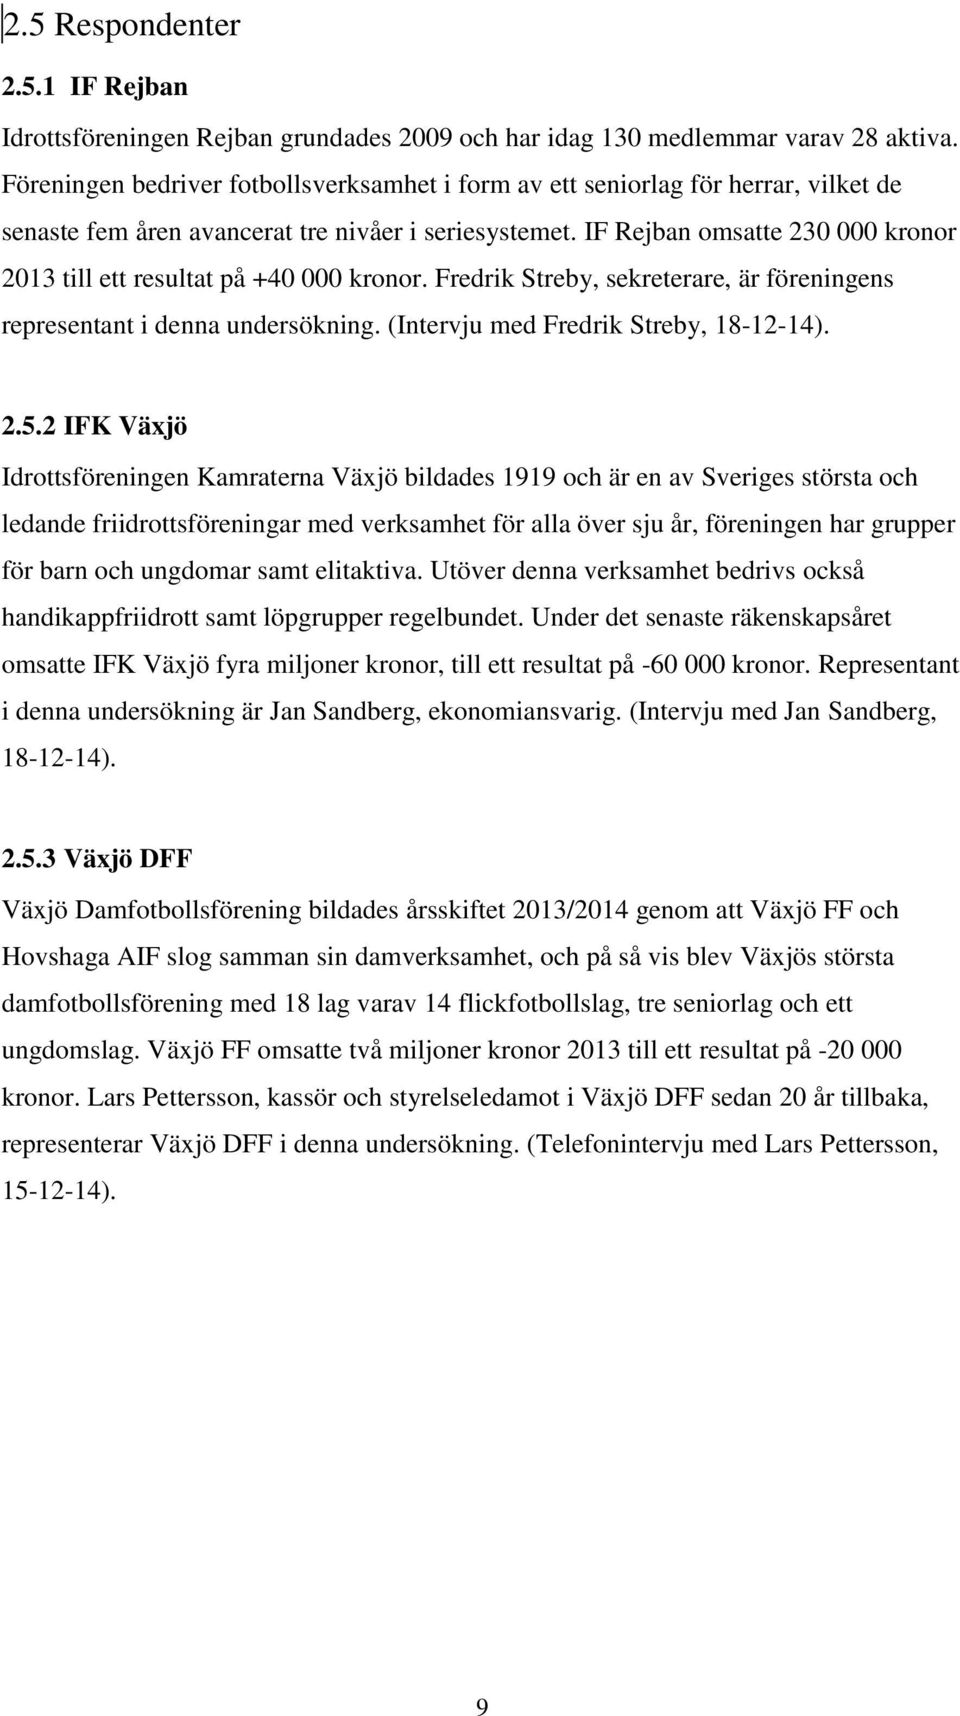 IF Rejban omsatte 230 000 kronor 2013 till ett resultat på +40 000 kronor. Fredrik Streby, sekreterare, är föreningens representant i denna undersökning. (Intervju med Fredrik Streby, 18-12-14). 2.5.